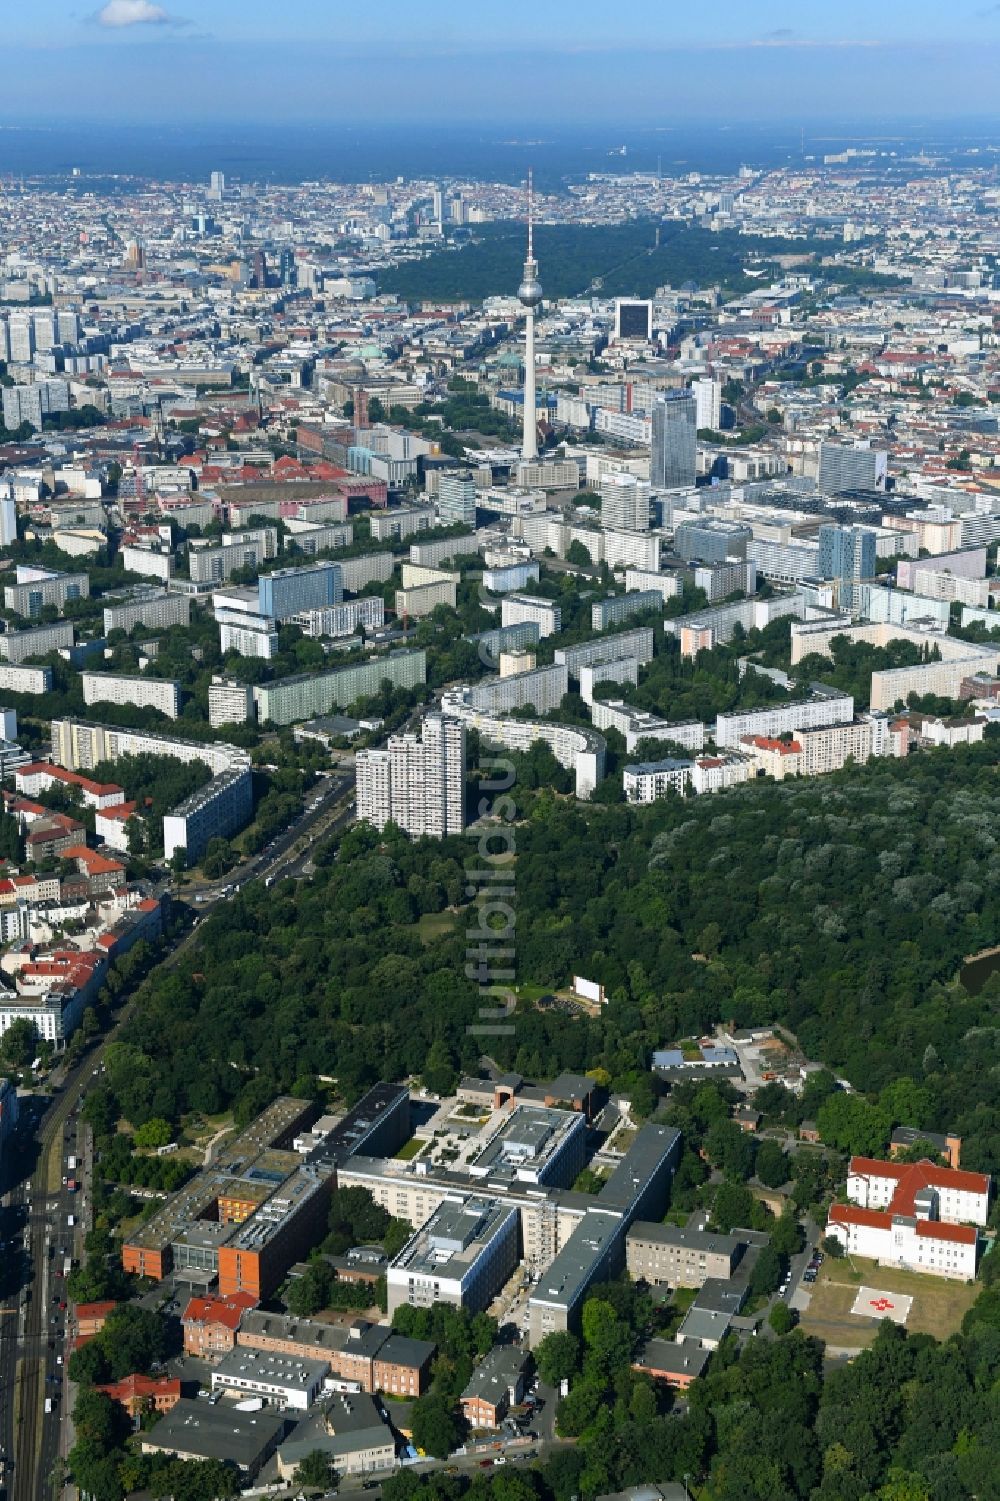 Luftbild Berlin - Klinikgelände des Krankenhauses Vivantes Klinikum im Friedrichshain in Berlin